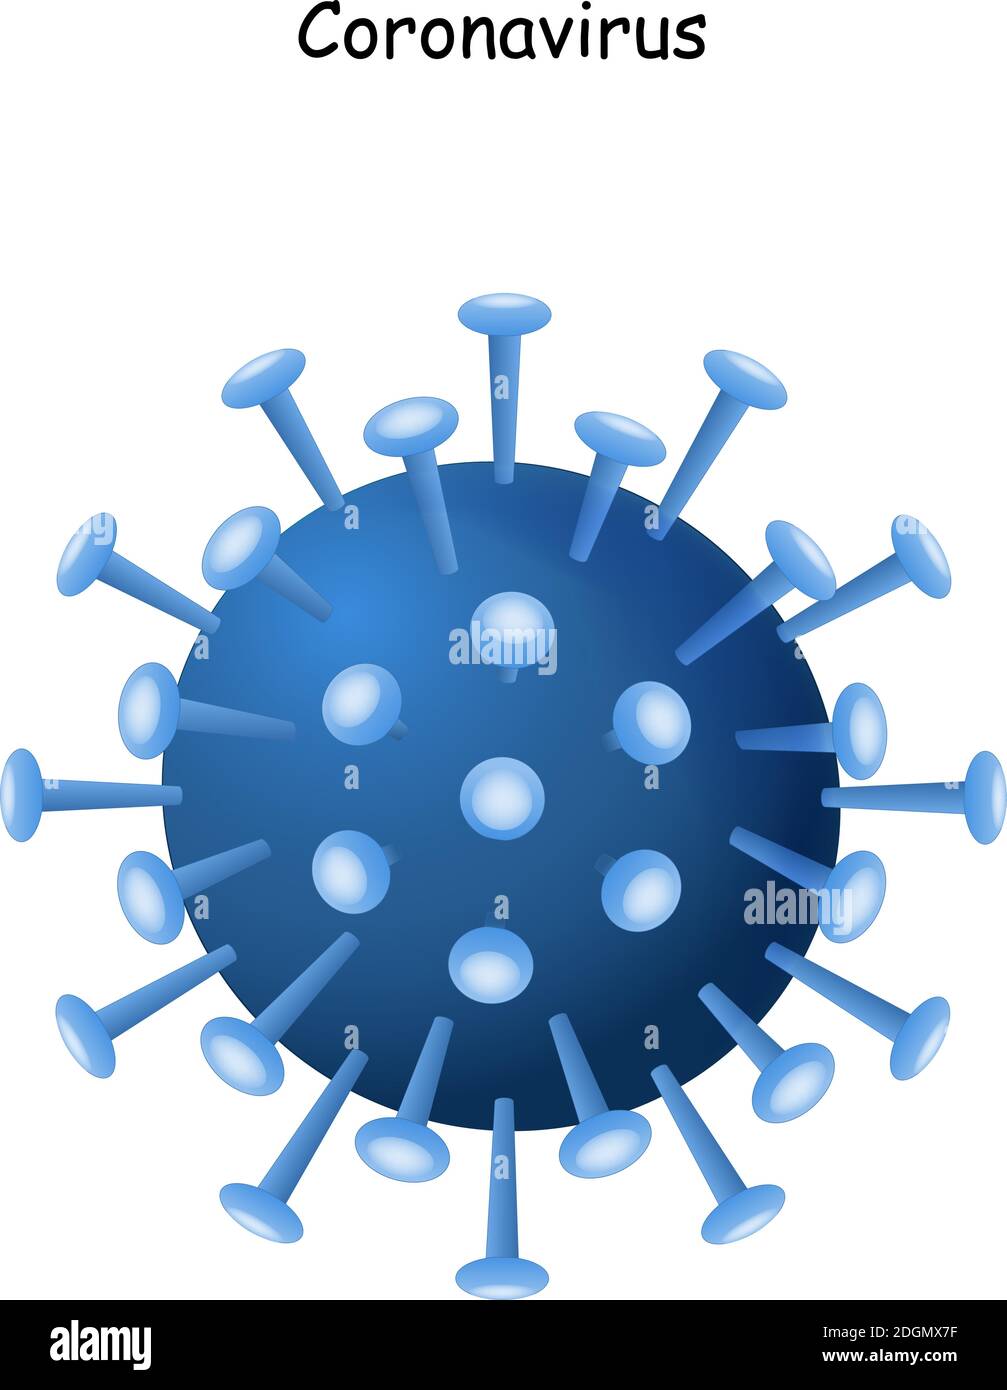 Coronavirus 2019-nCoV. Icona del virus corona. Cina patogeno infezione respiratoria (epidemia di influenza asiatica). Influenza pandemia. Virion Illustrazione Vettoriale